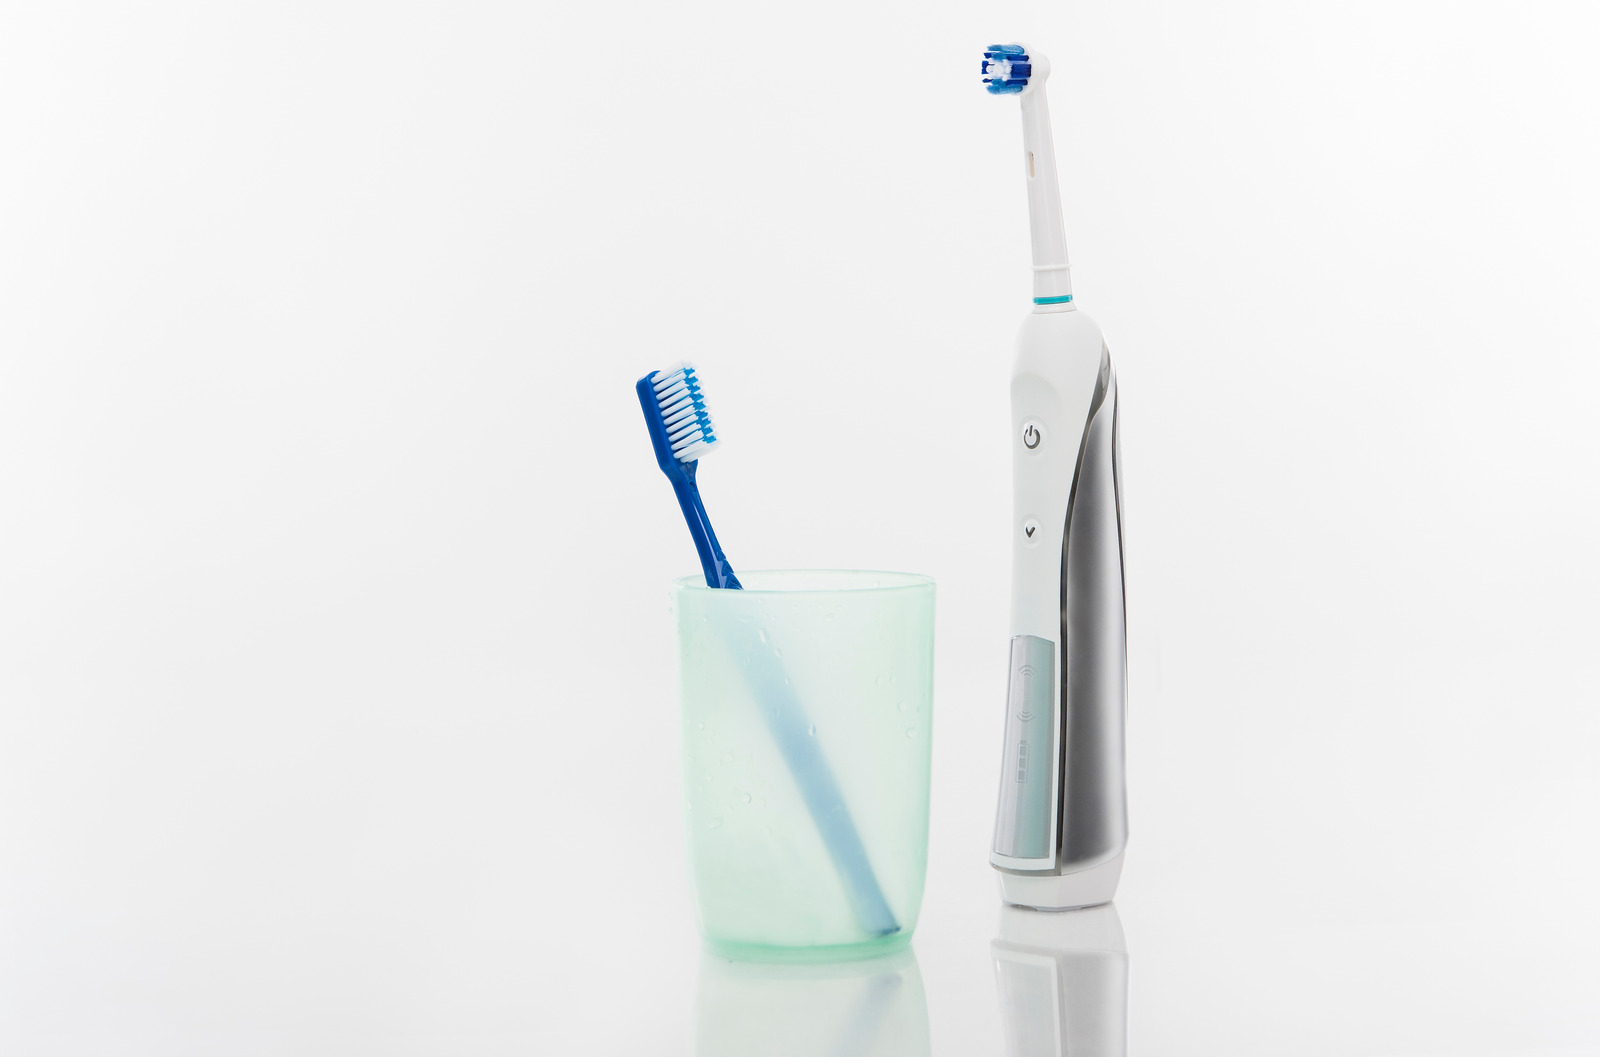 Manual Regular Toothbrush Against Modern Electric Toothbrush